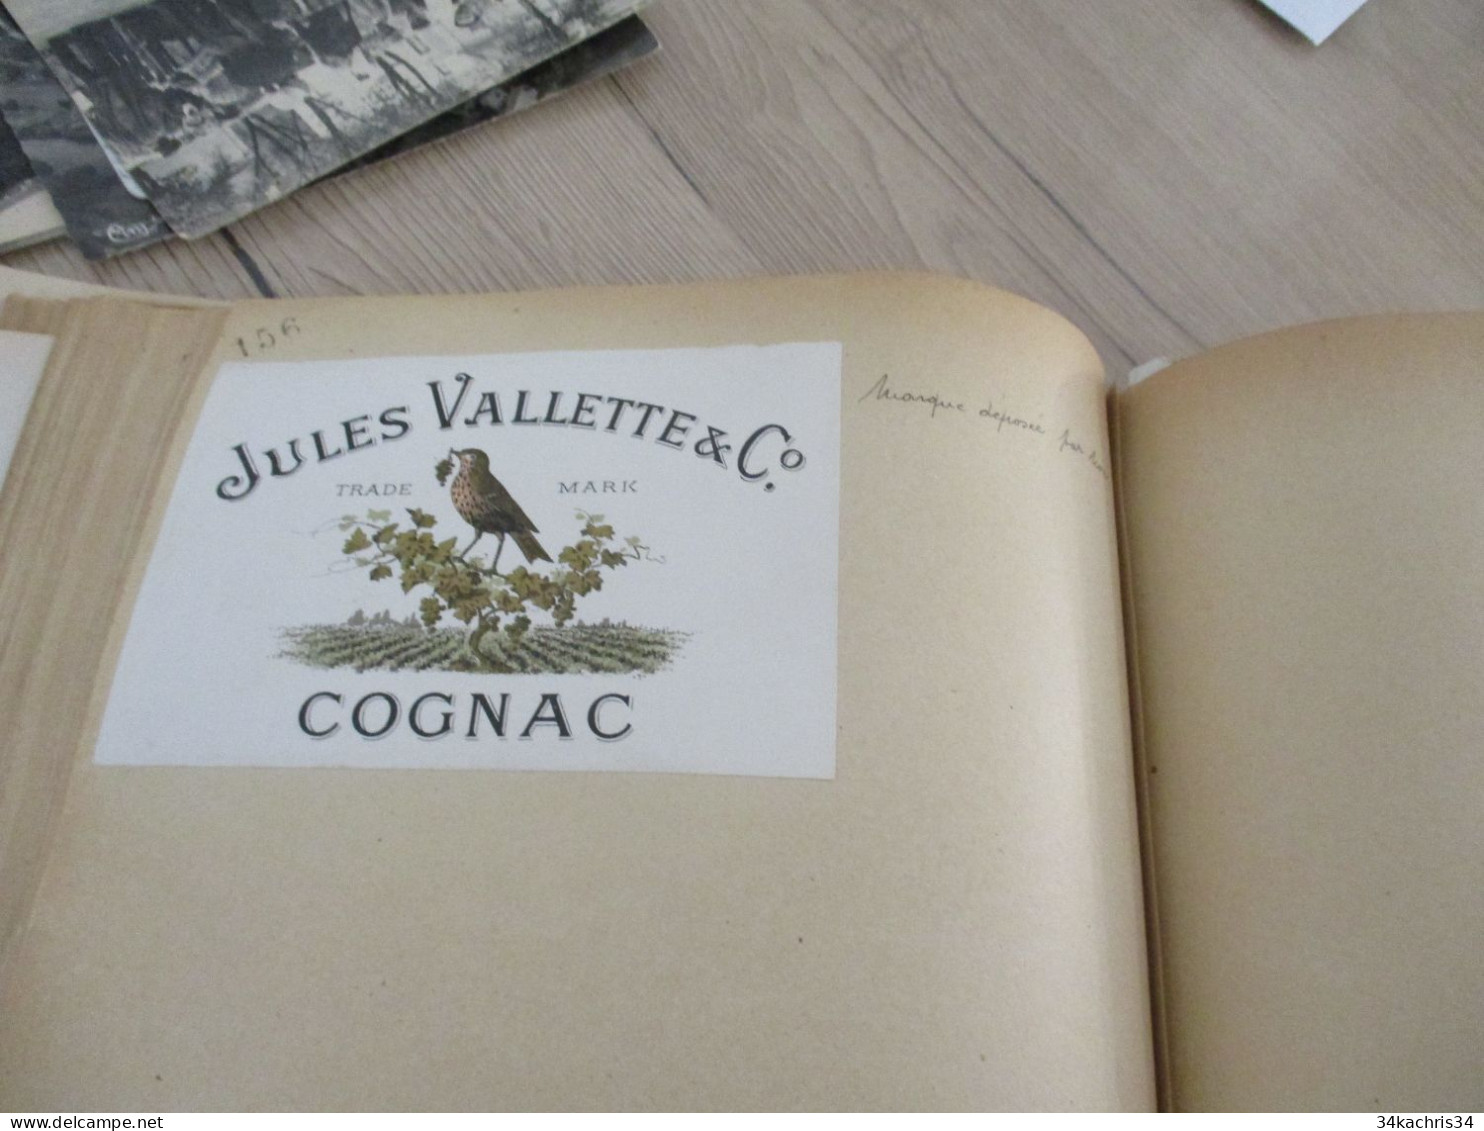 Livre des étiquettes et monopoles concédés Surtout Charente Cognac + de 100 documents